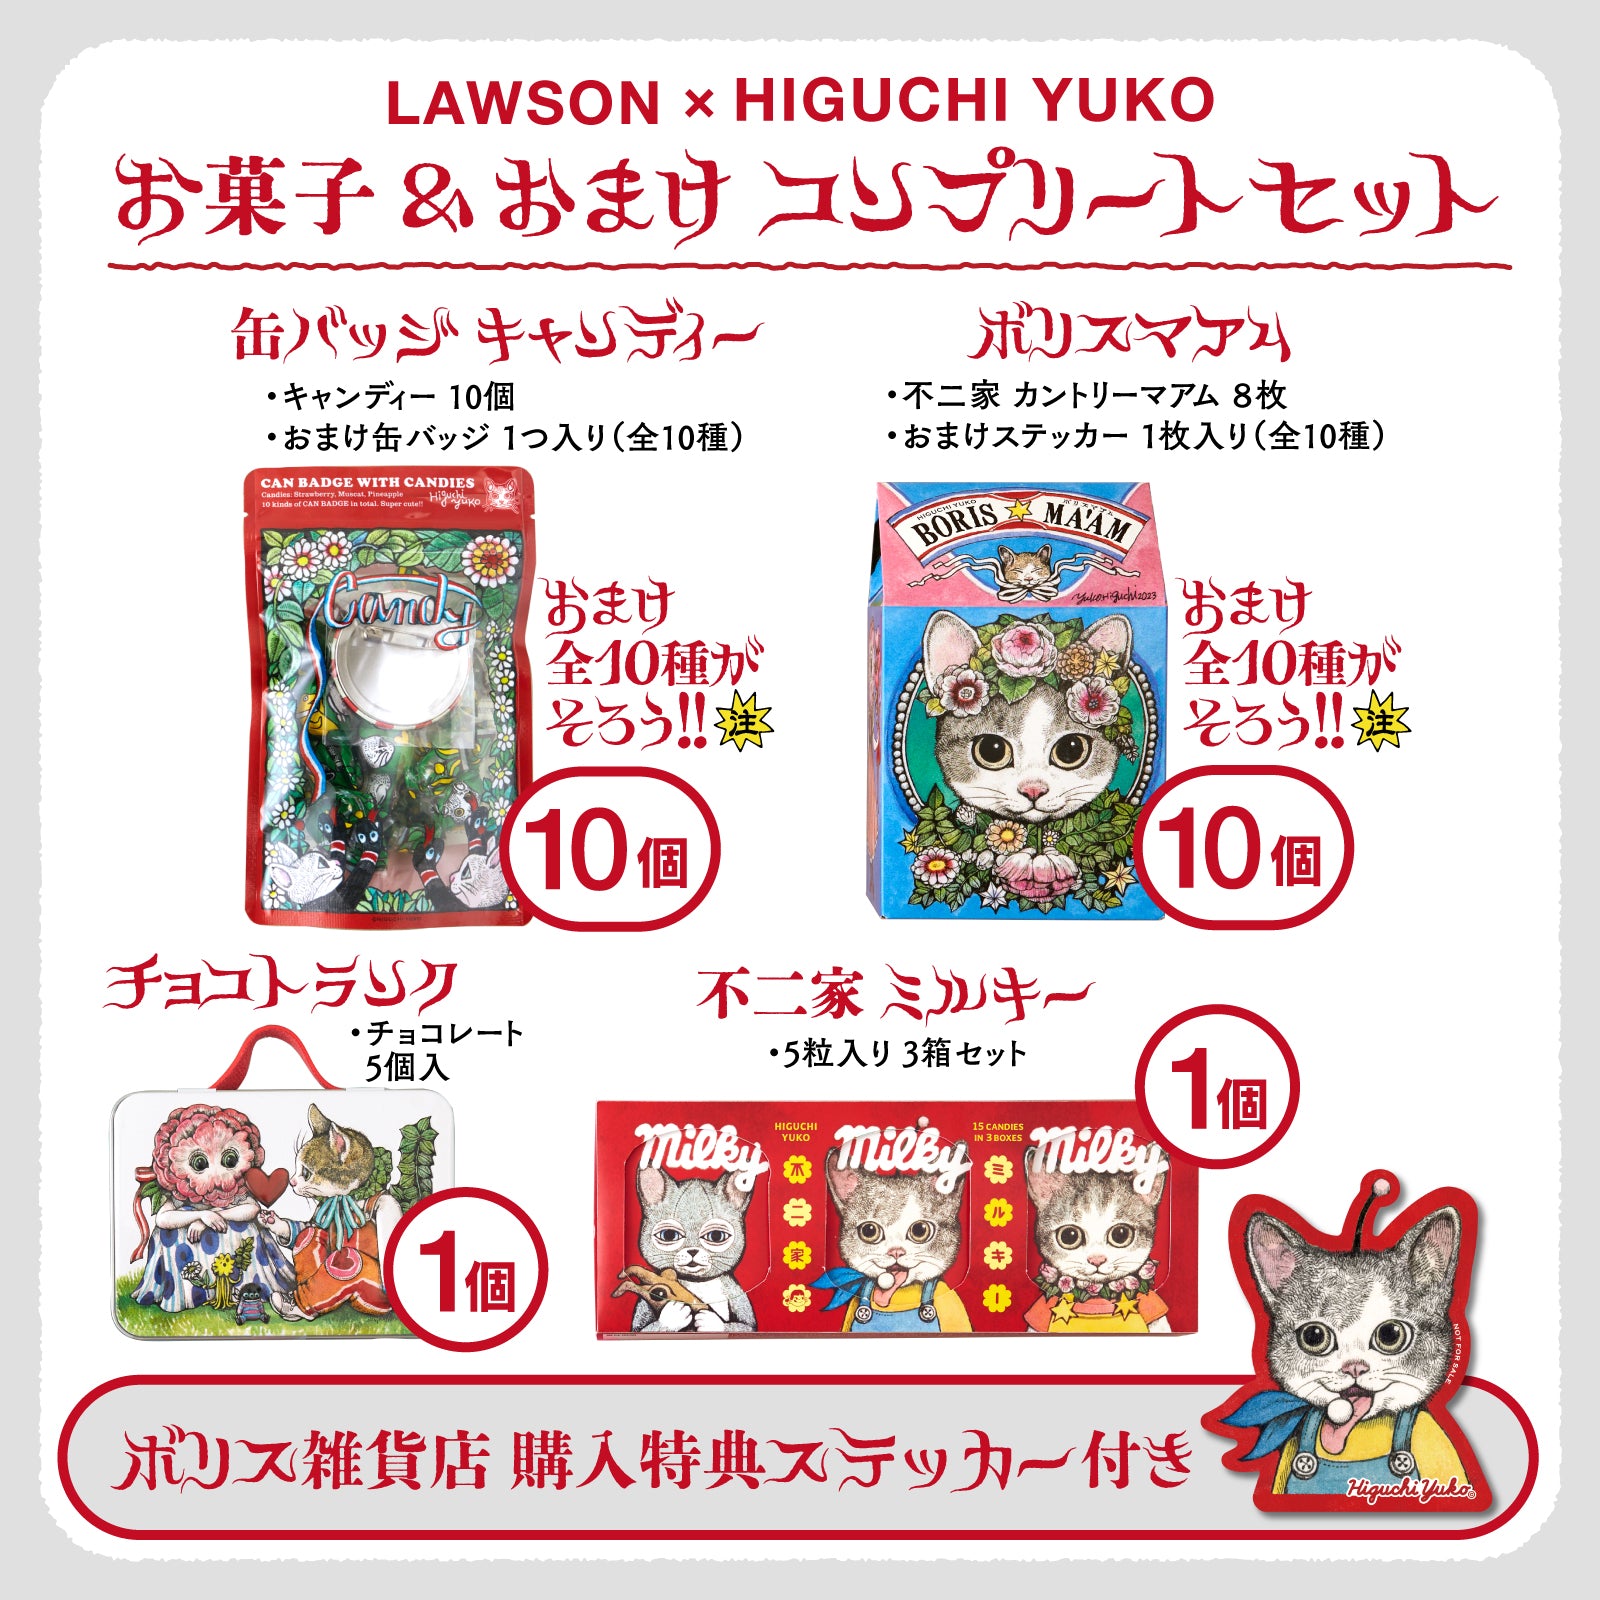 ヒグチユウコ ローソン 缶バッジ キャンディー 5個セット - 菓子